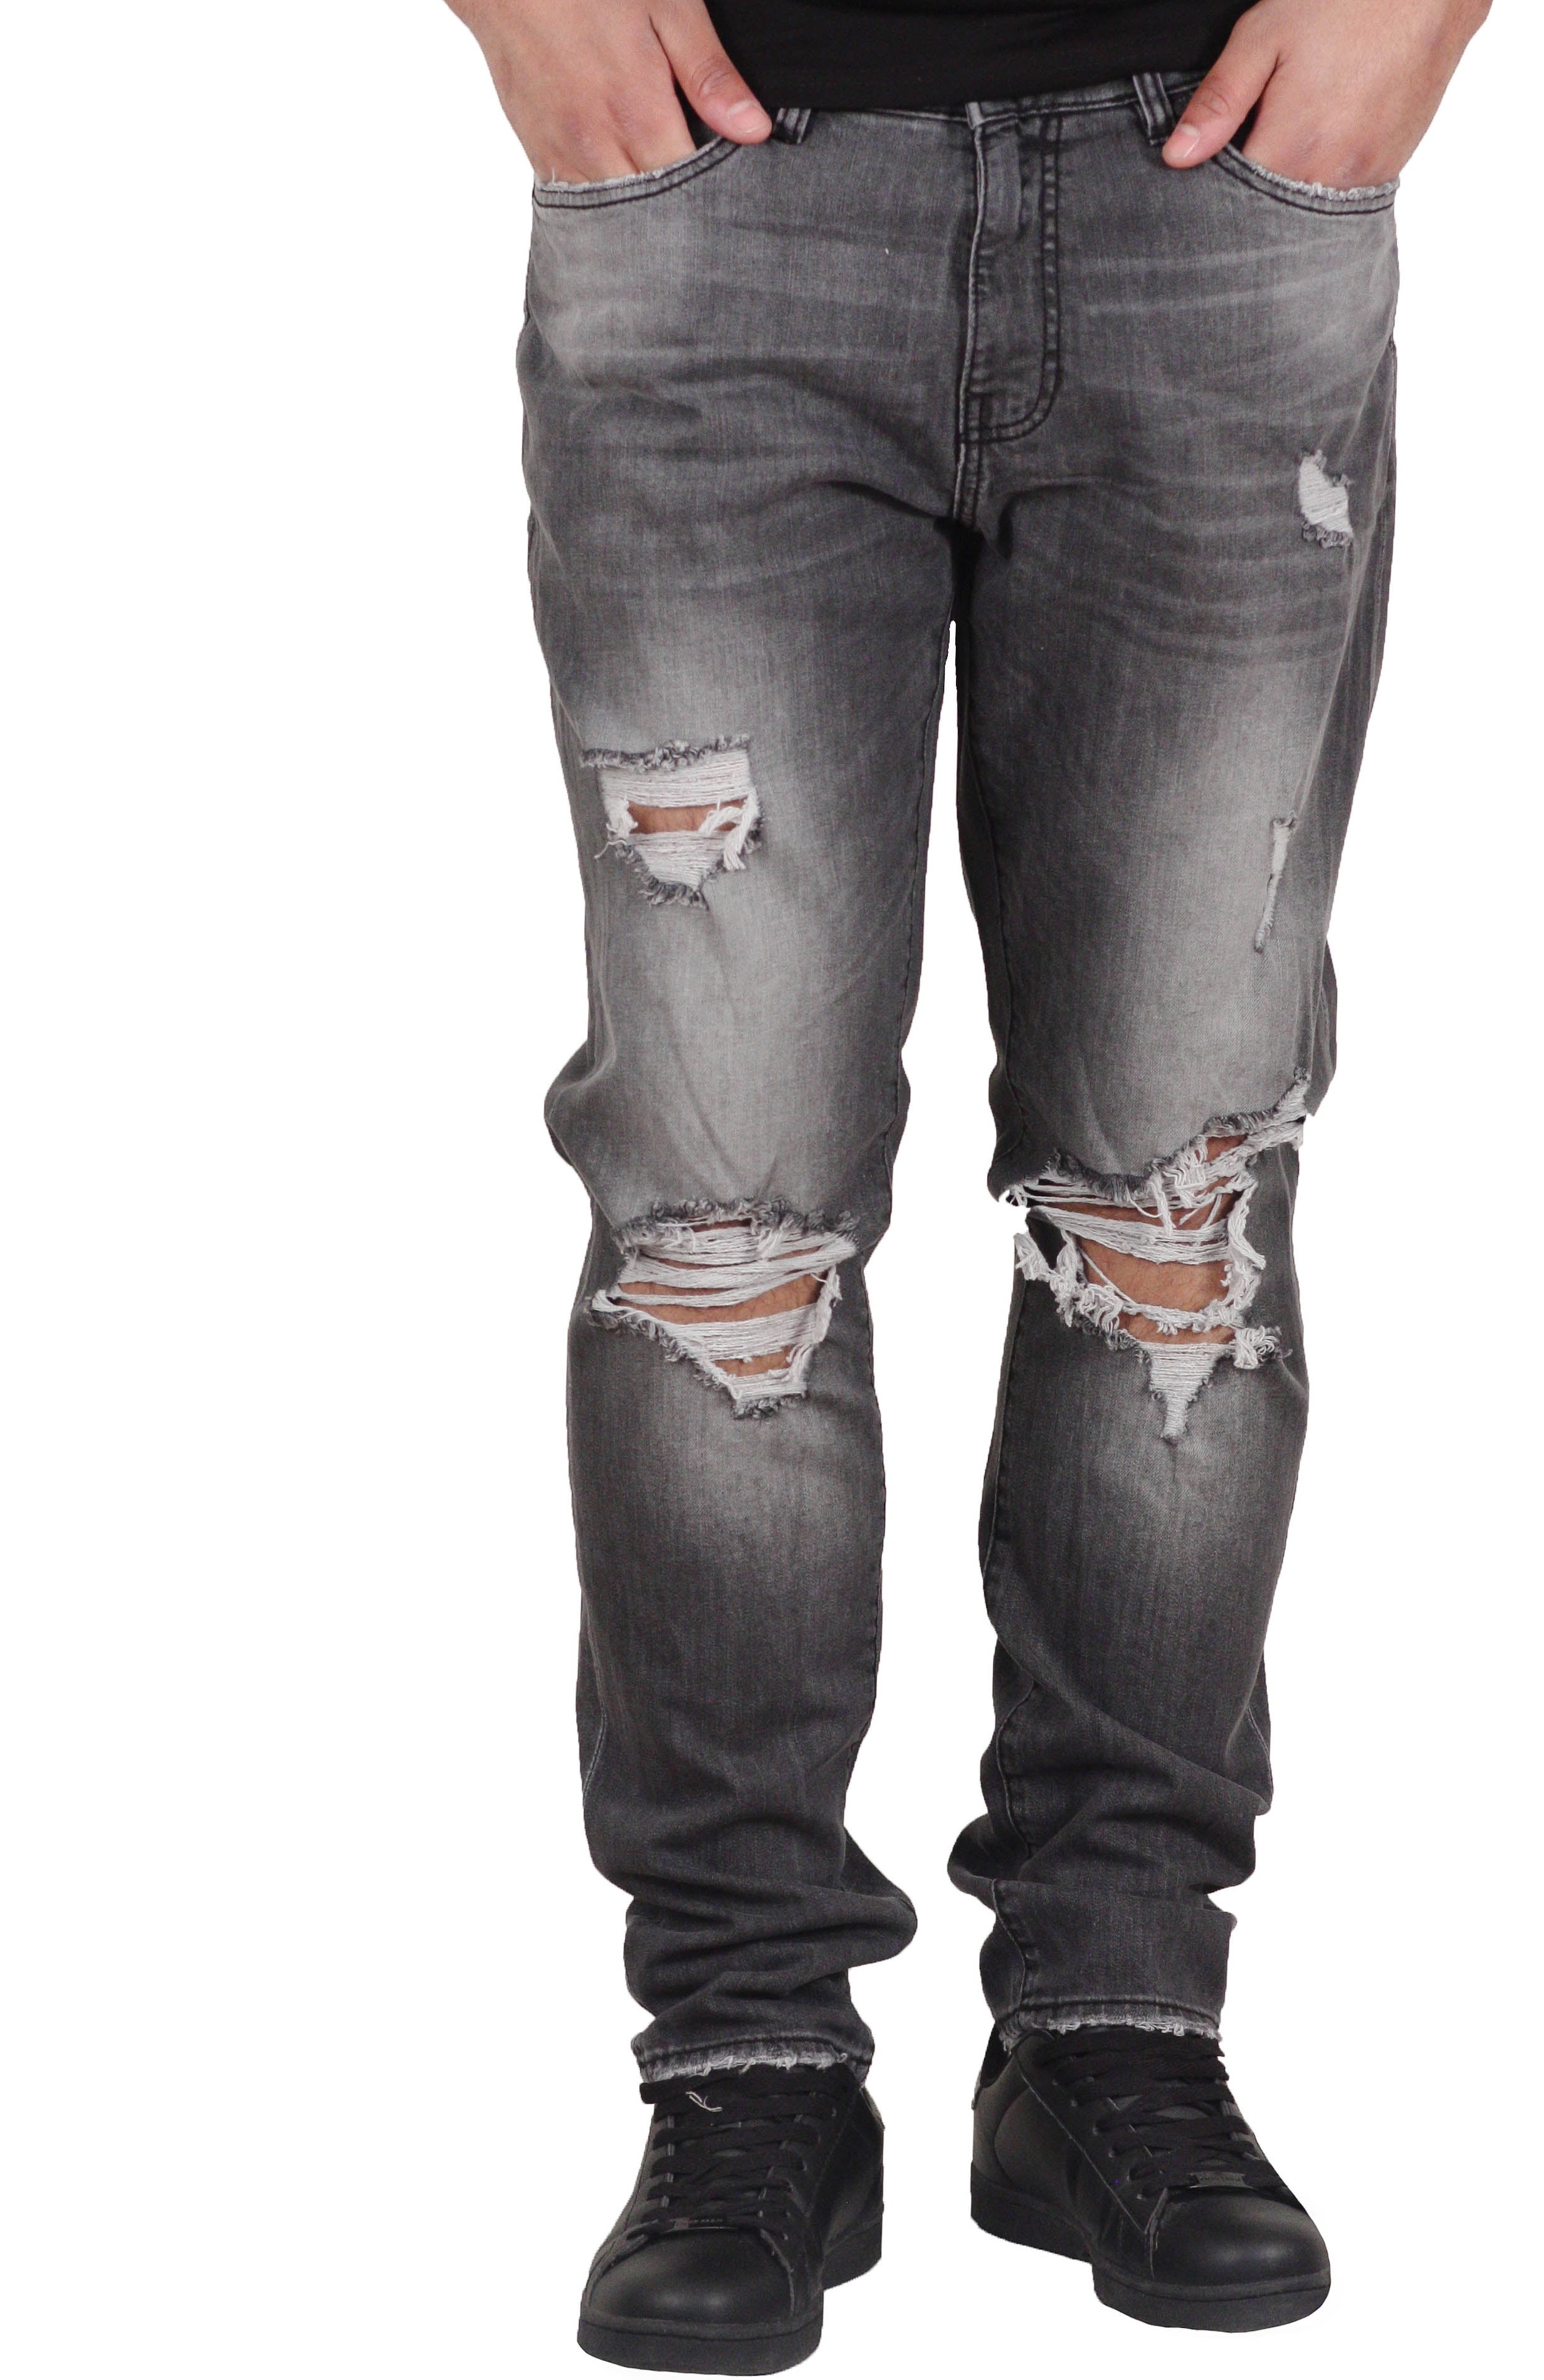 jordan craig jeans big and tall